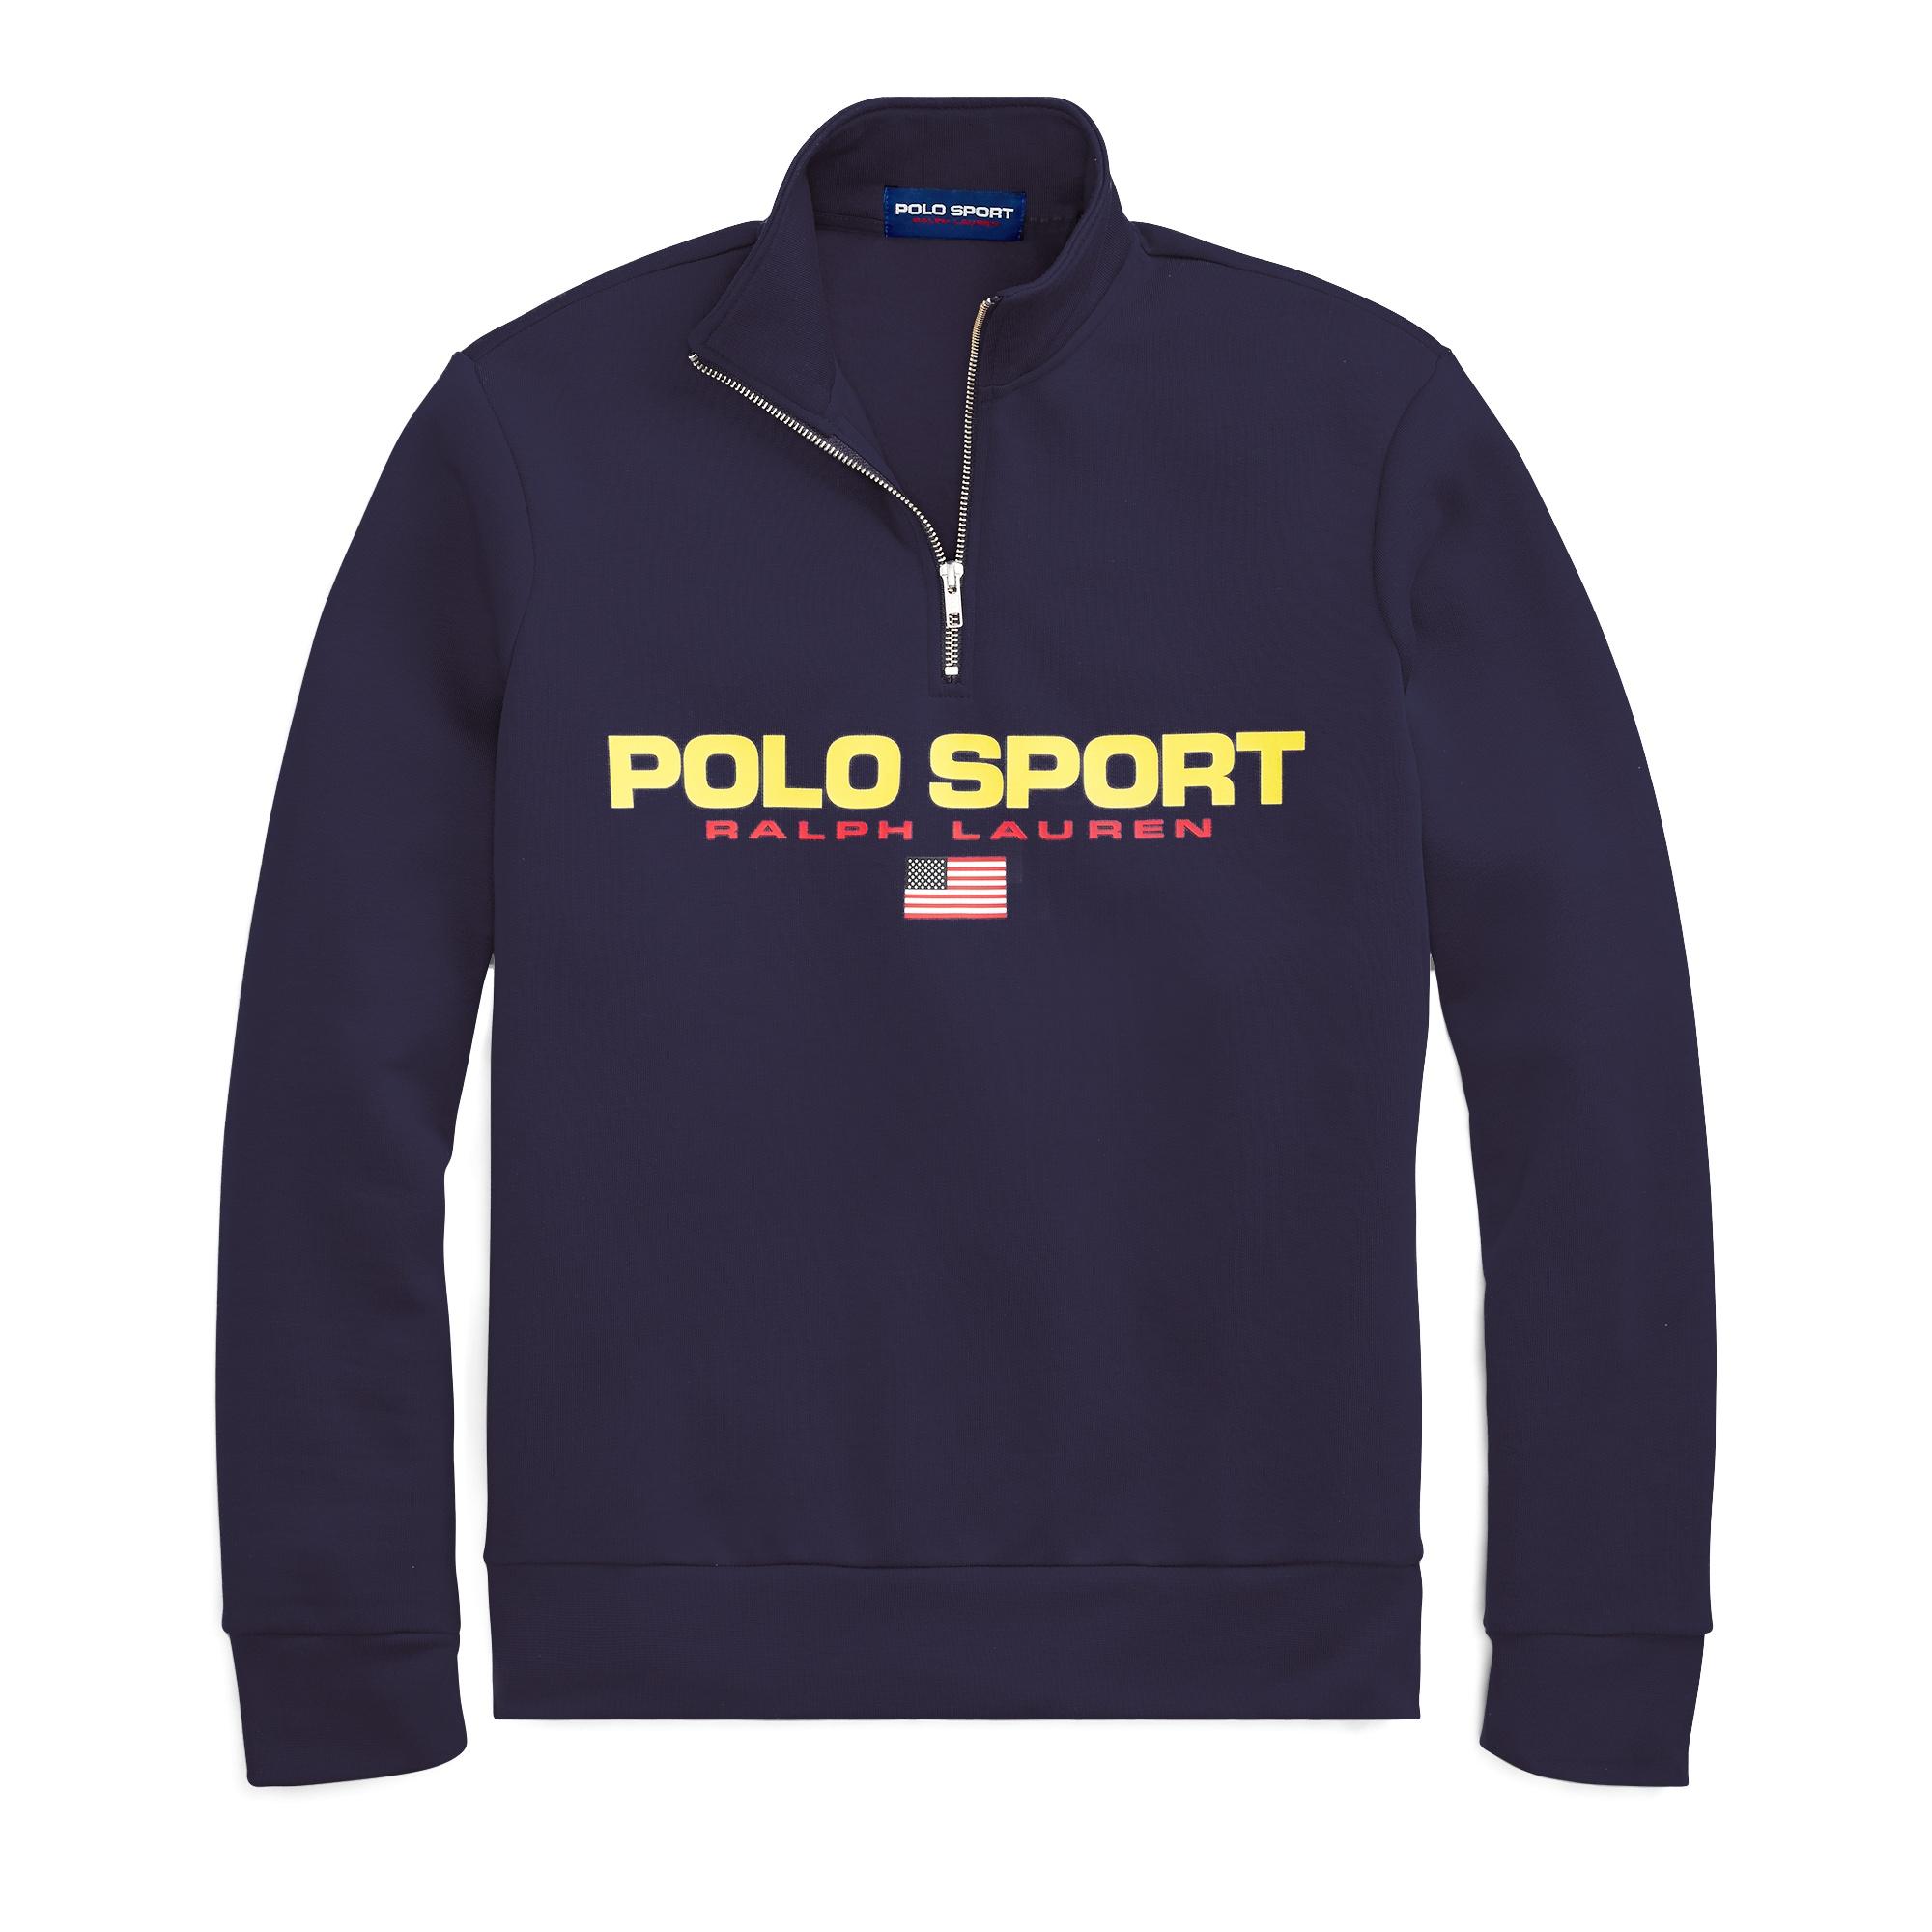 Polo Ralph Lauren Polo Sport Fleece Sweatshirt in Blue for Men - Lyst